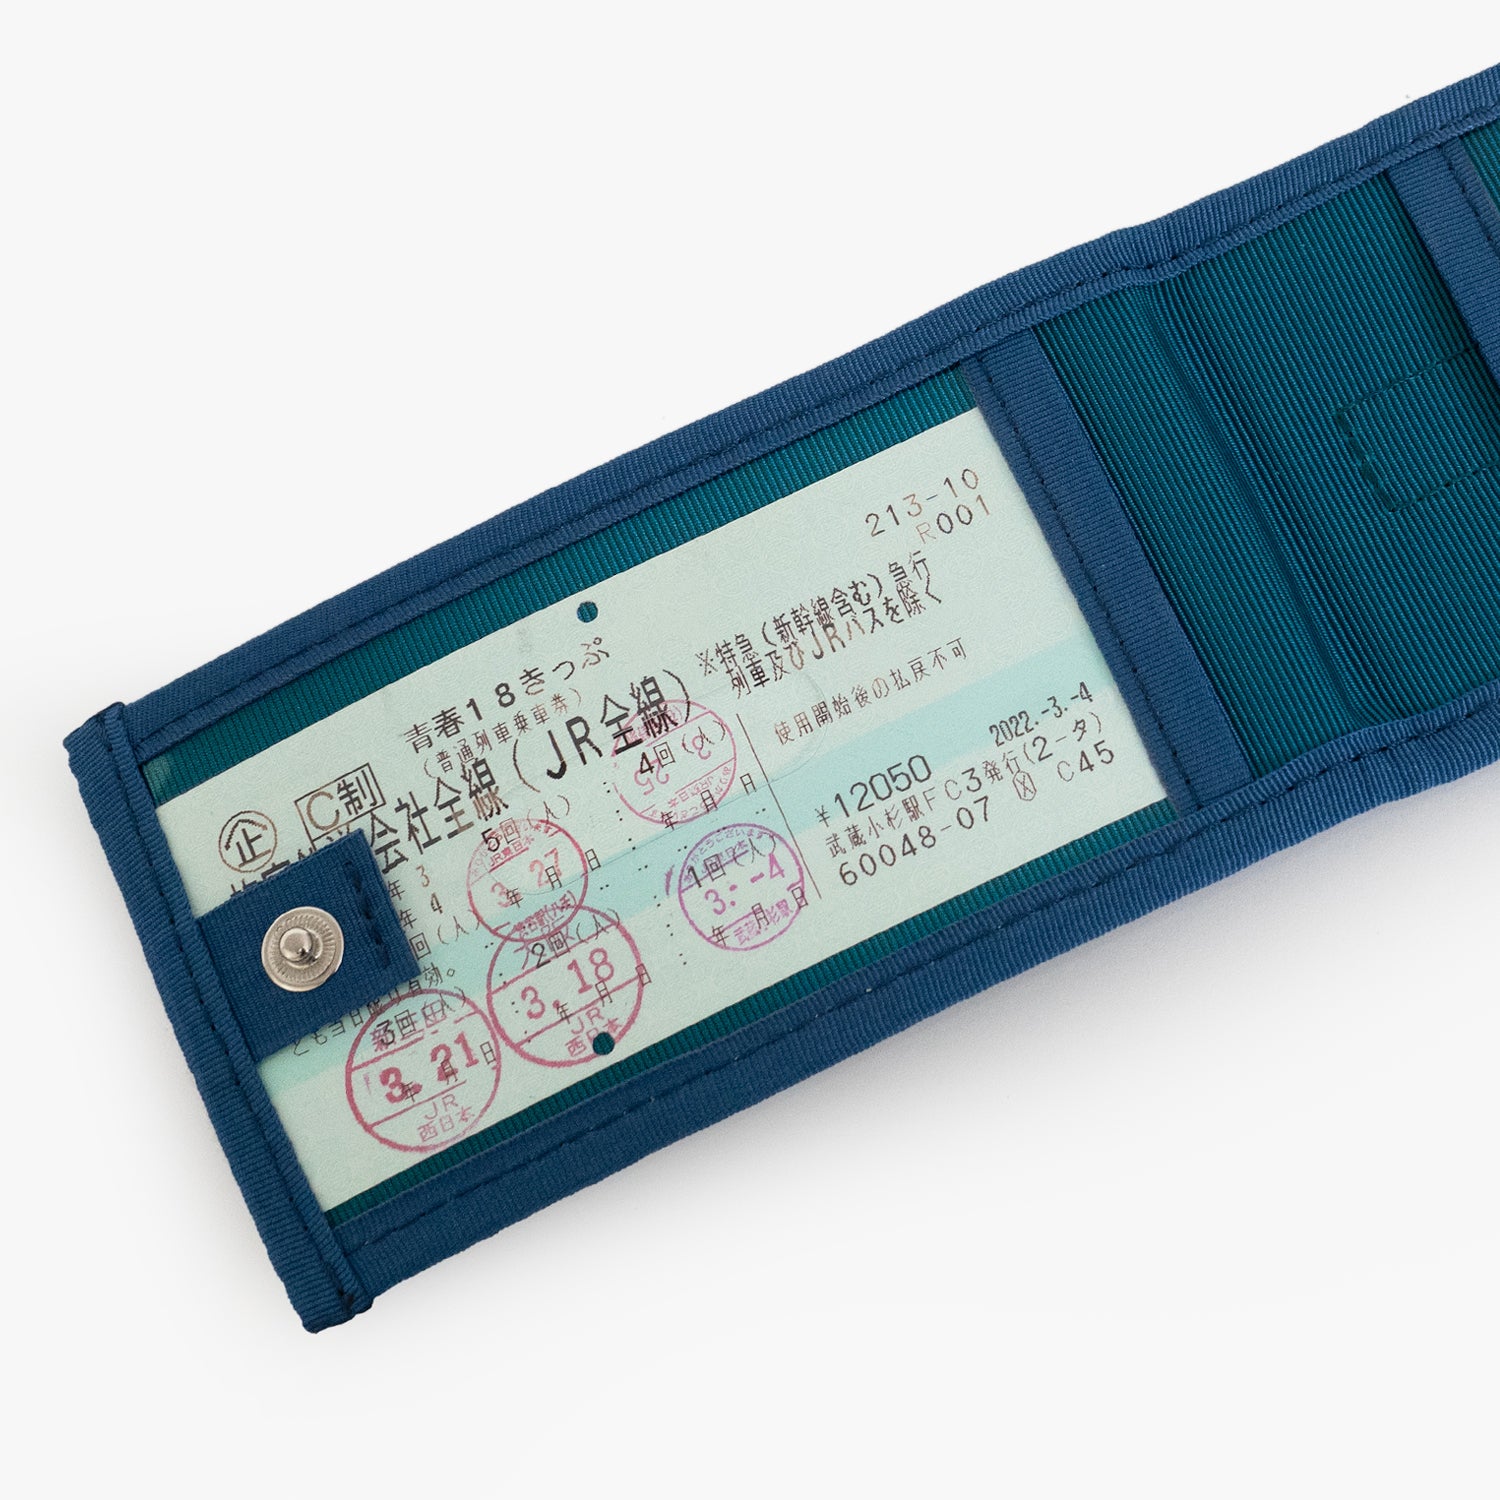 N700A東海道新幹線モケットラゲージタグは、ホックで留めて収納しているチケットや個人情報を隠すことができます。